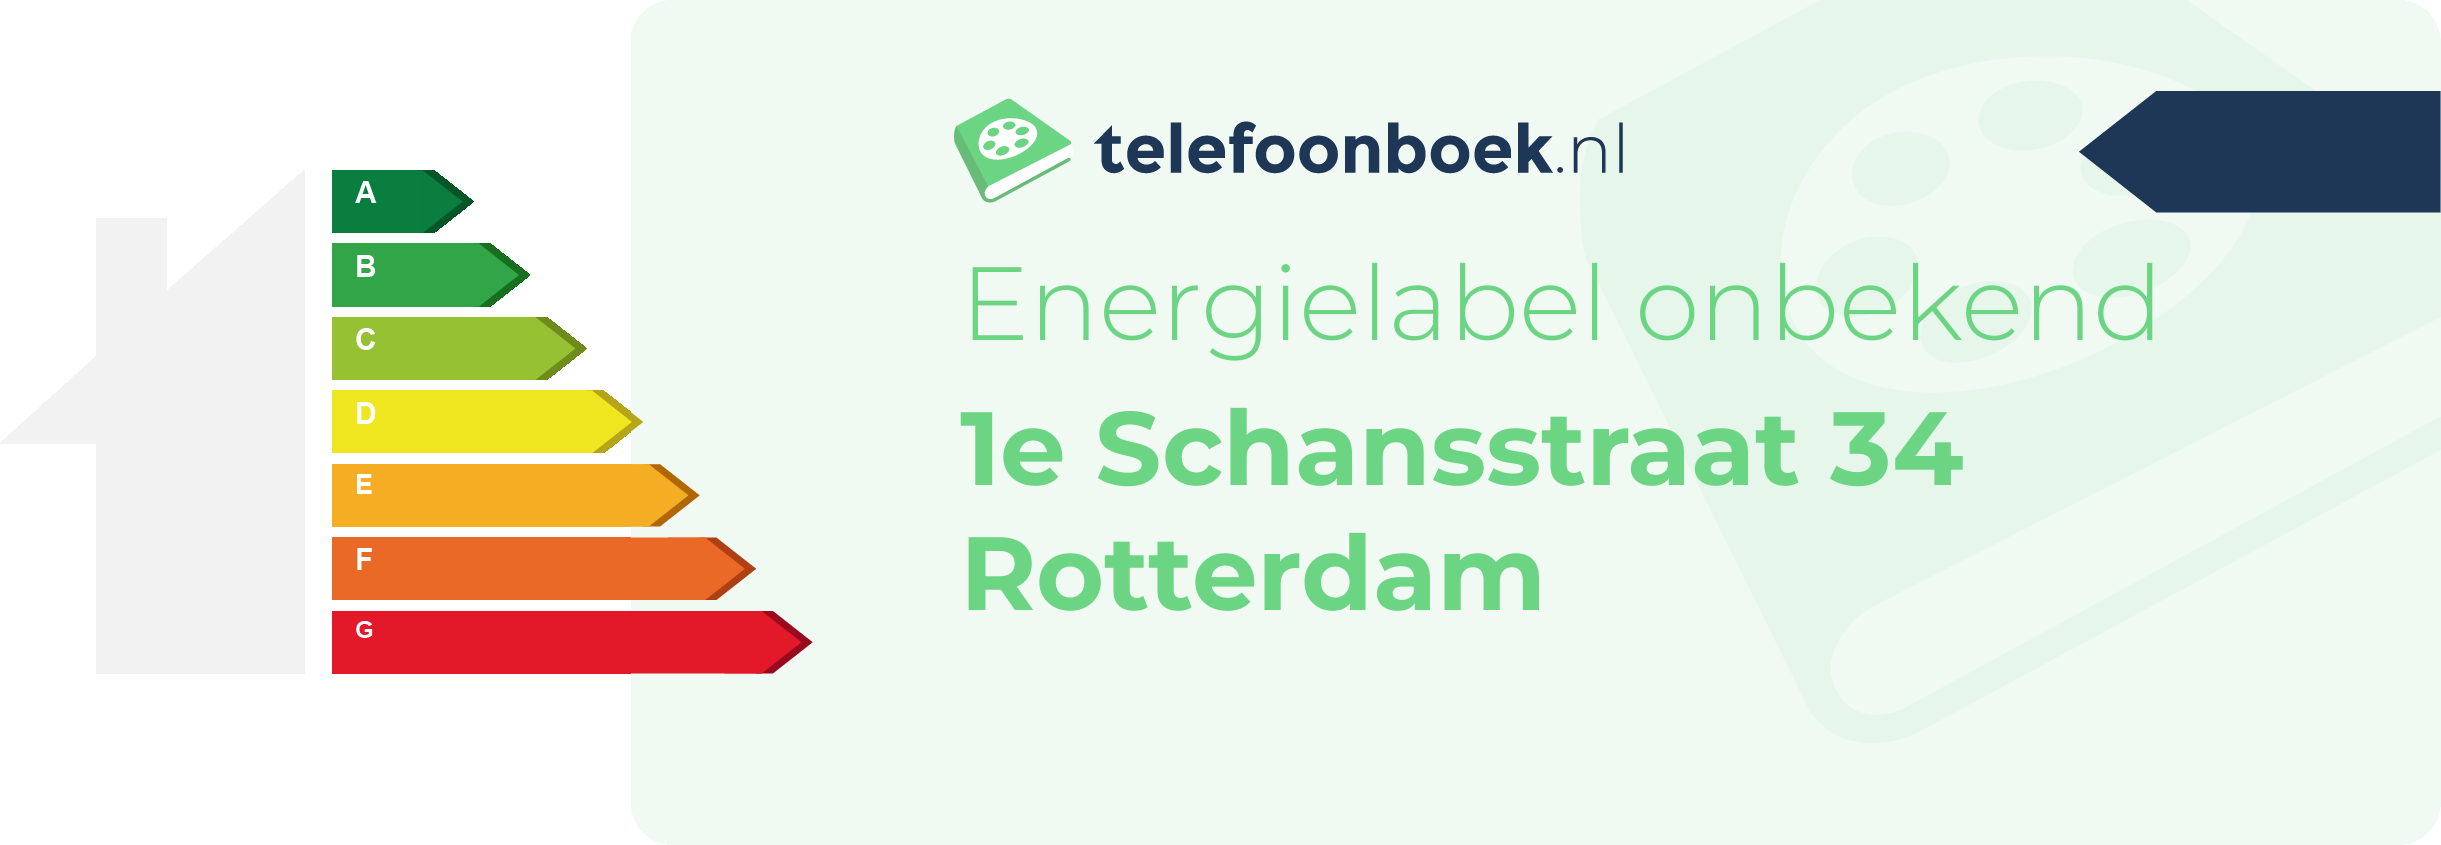 Energielabel 1e Schansstraat 34 Rotterdam